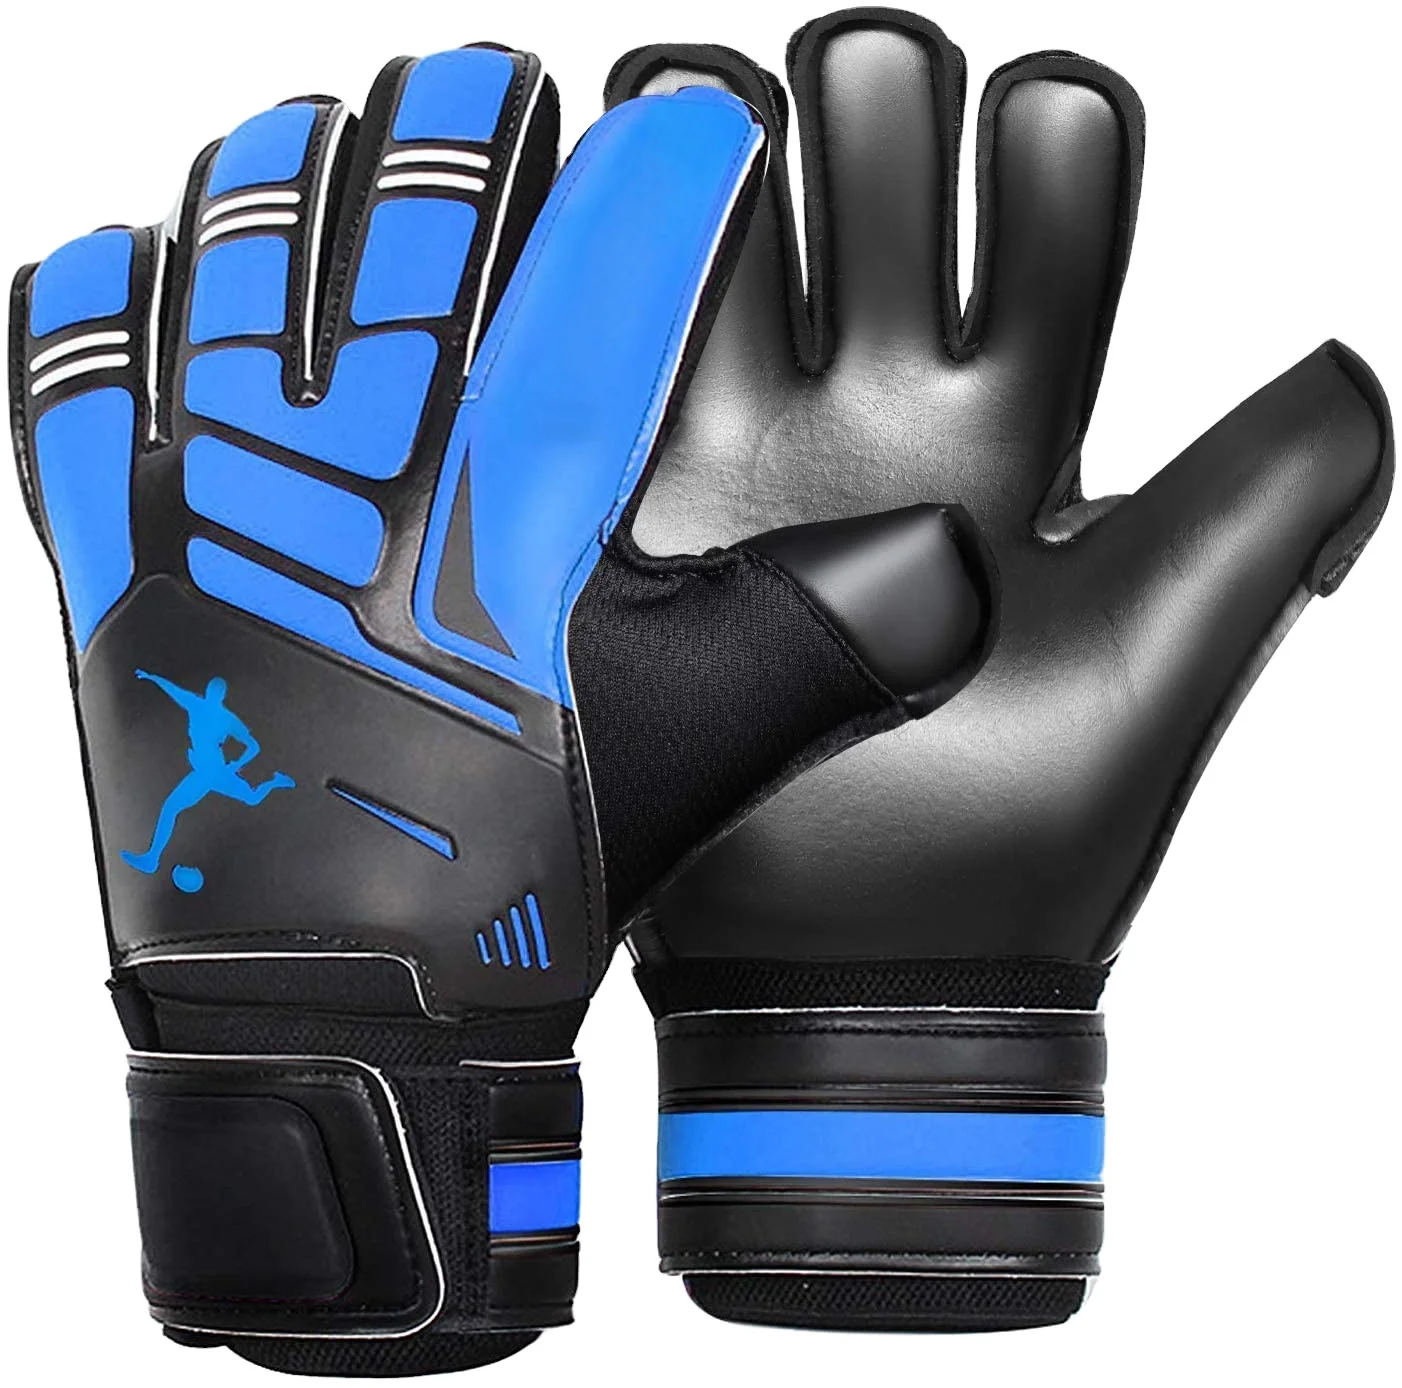 EUROPA Soccer Goalie Gloves NWT Size 9 